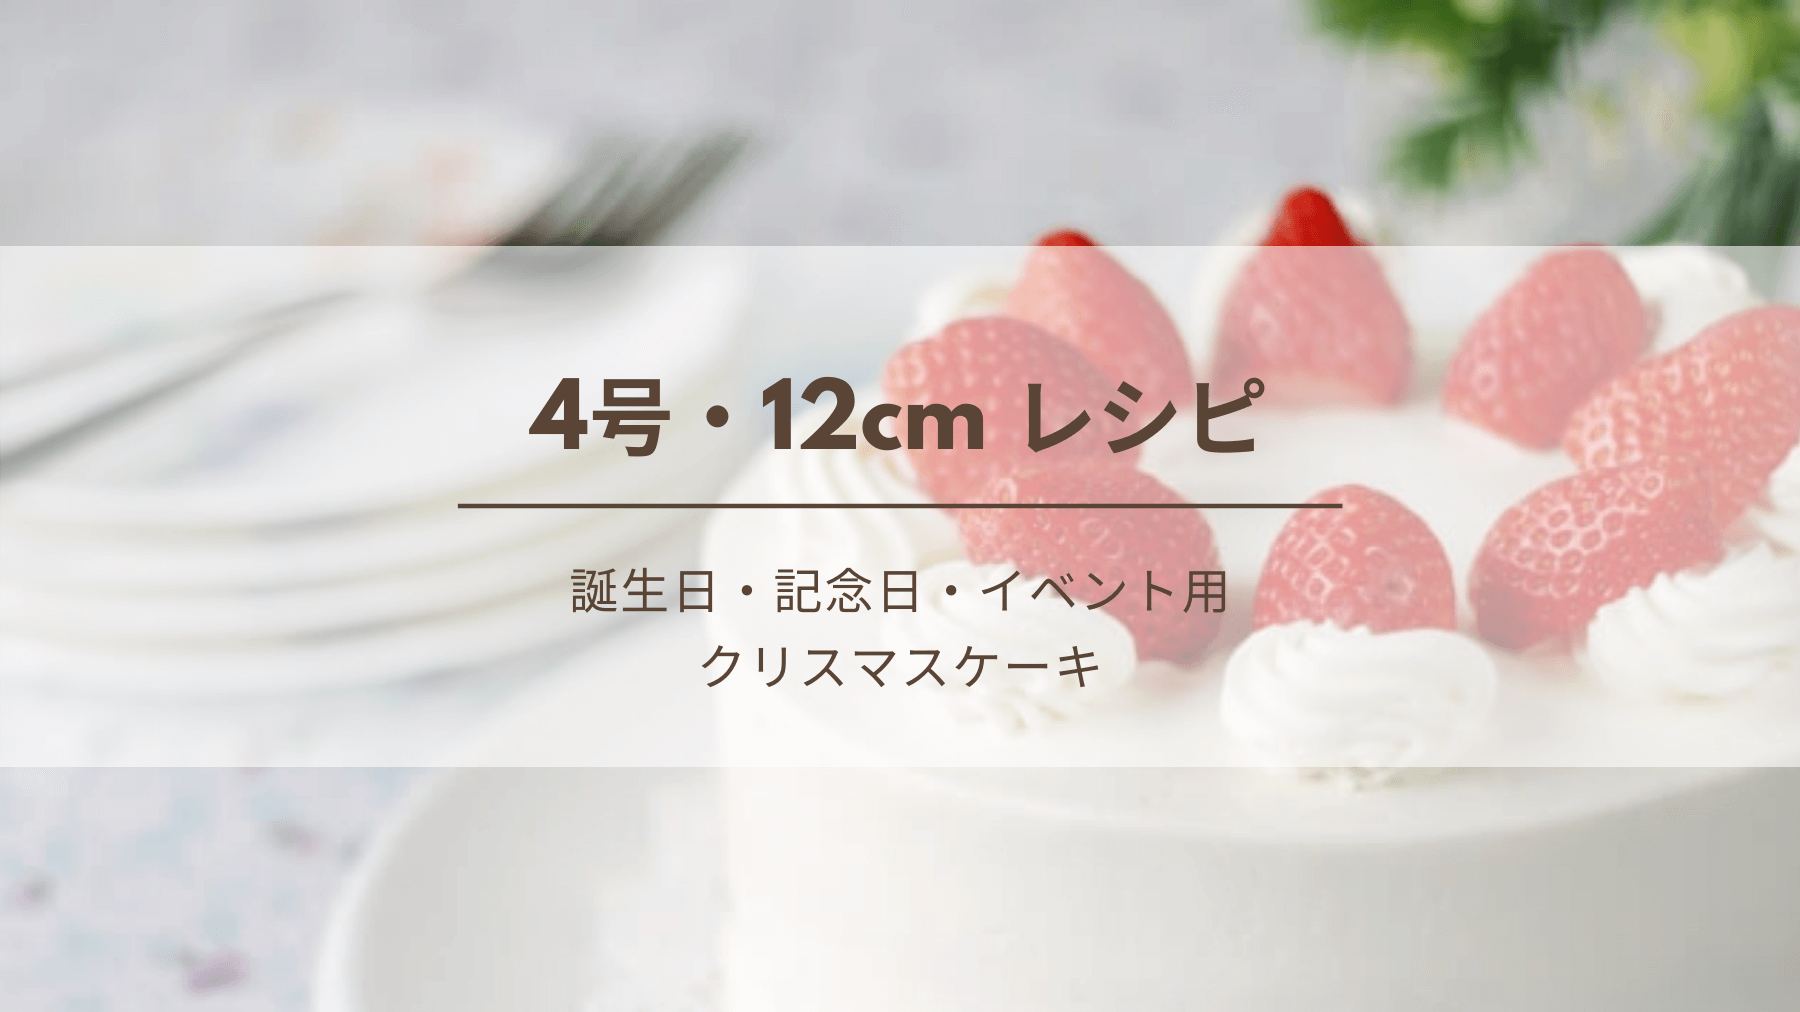 4号 12cm デコレーションケーキのレシピ 生クリームの必要量 クリスマス 誕生日 記念日 イベント用 Kitchen Report キッチンレポ